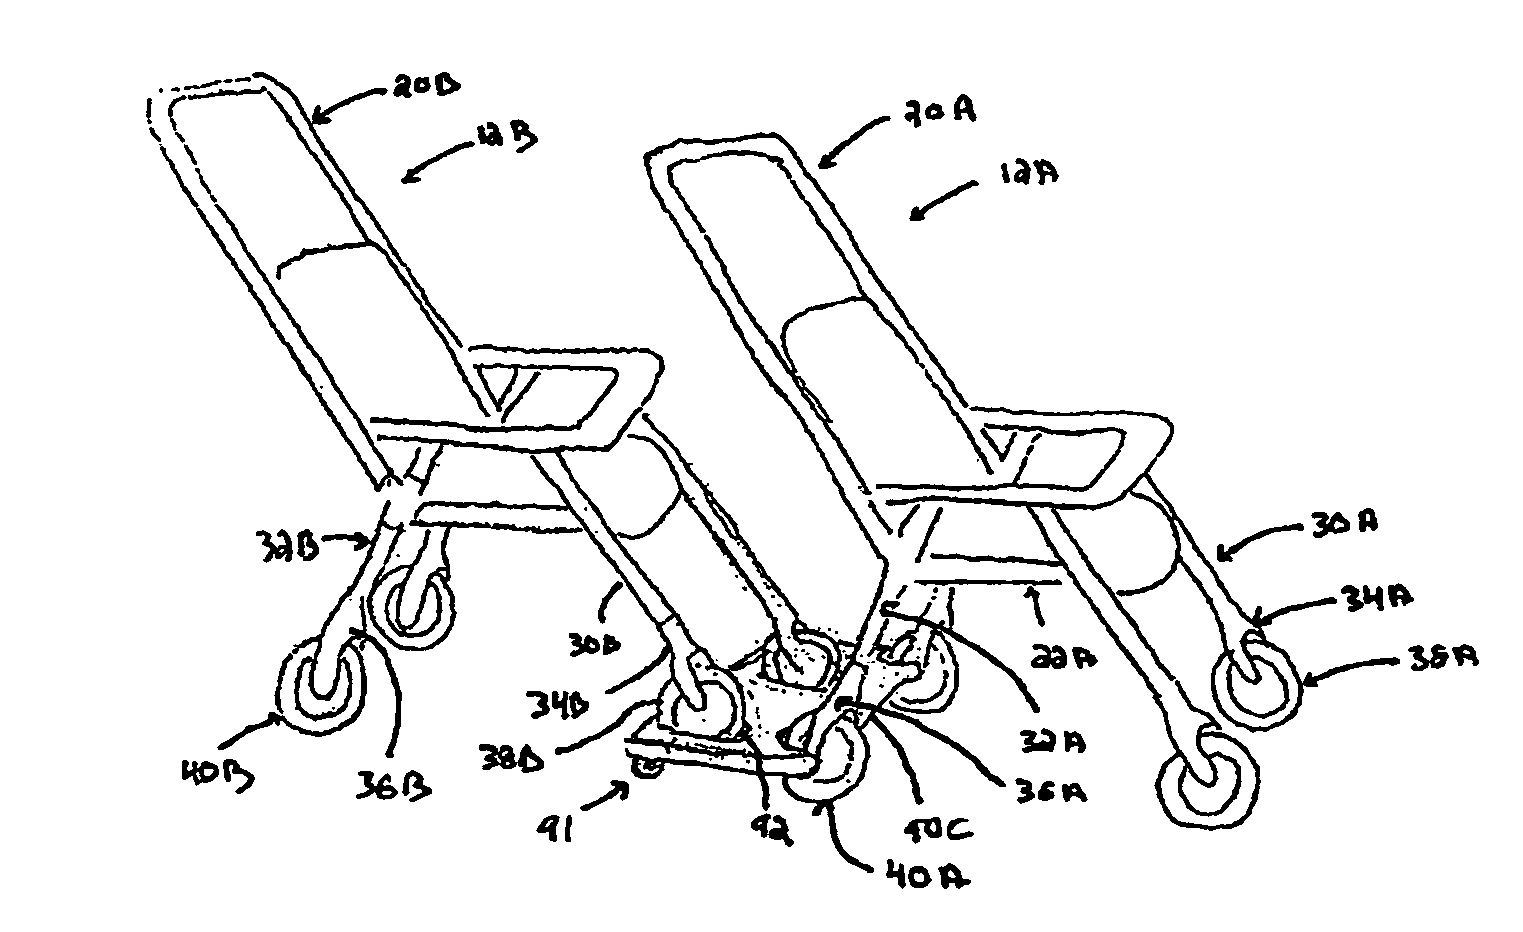 Modular stroller